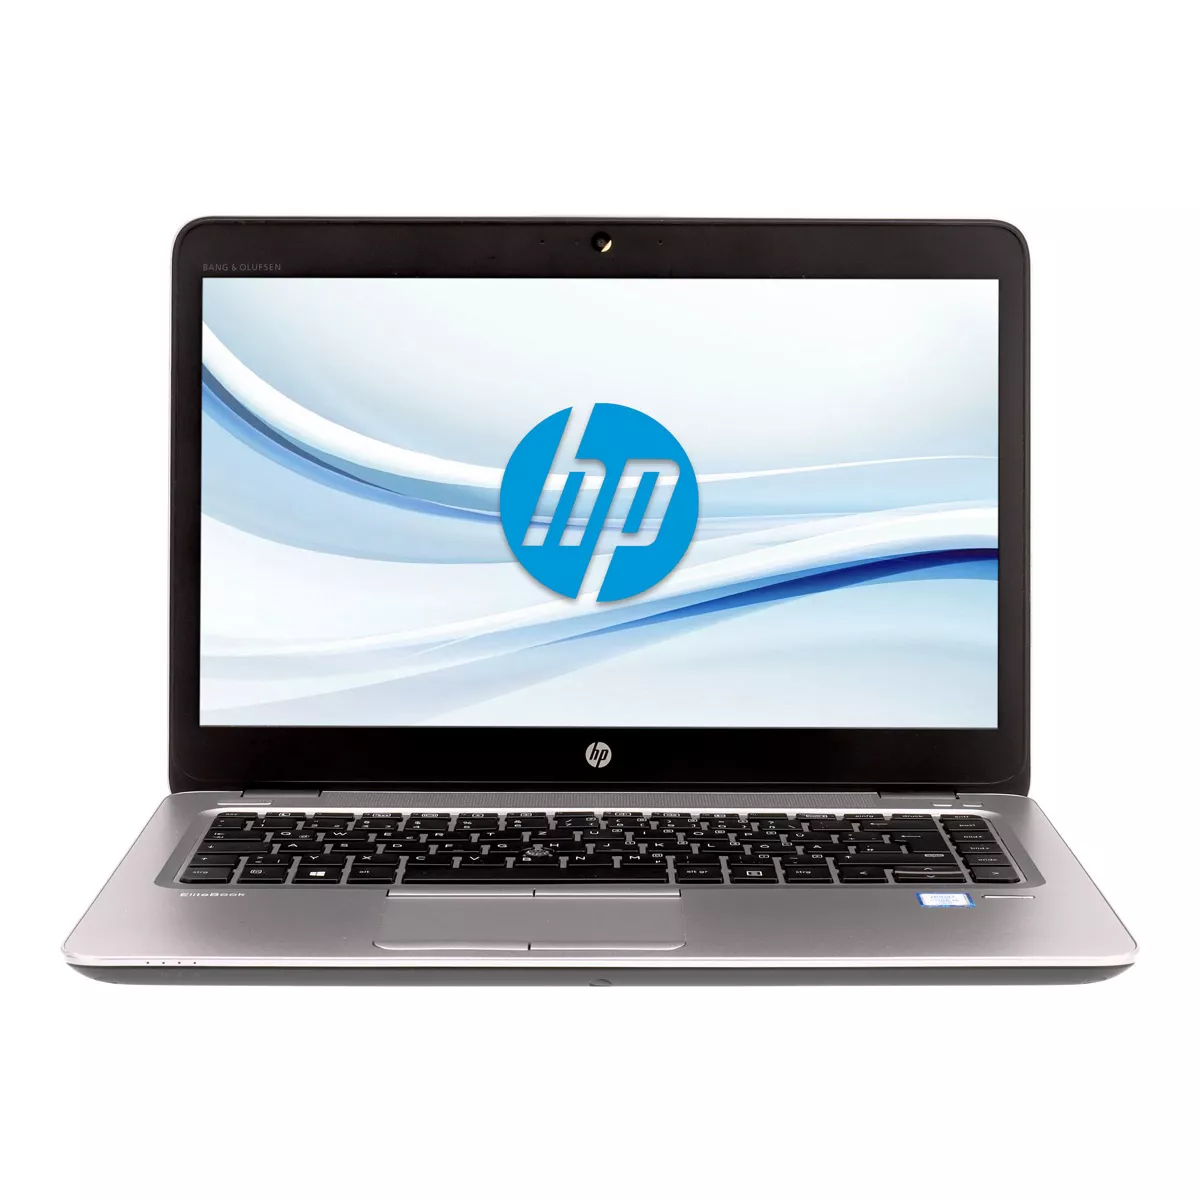 HP EliteBook 840 G3 Core i5 6300U 2,40 GHz 240 GB M.2 SSD Webcam A+